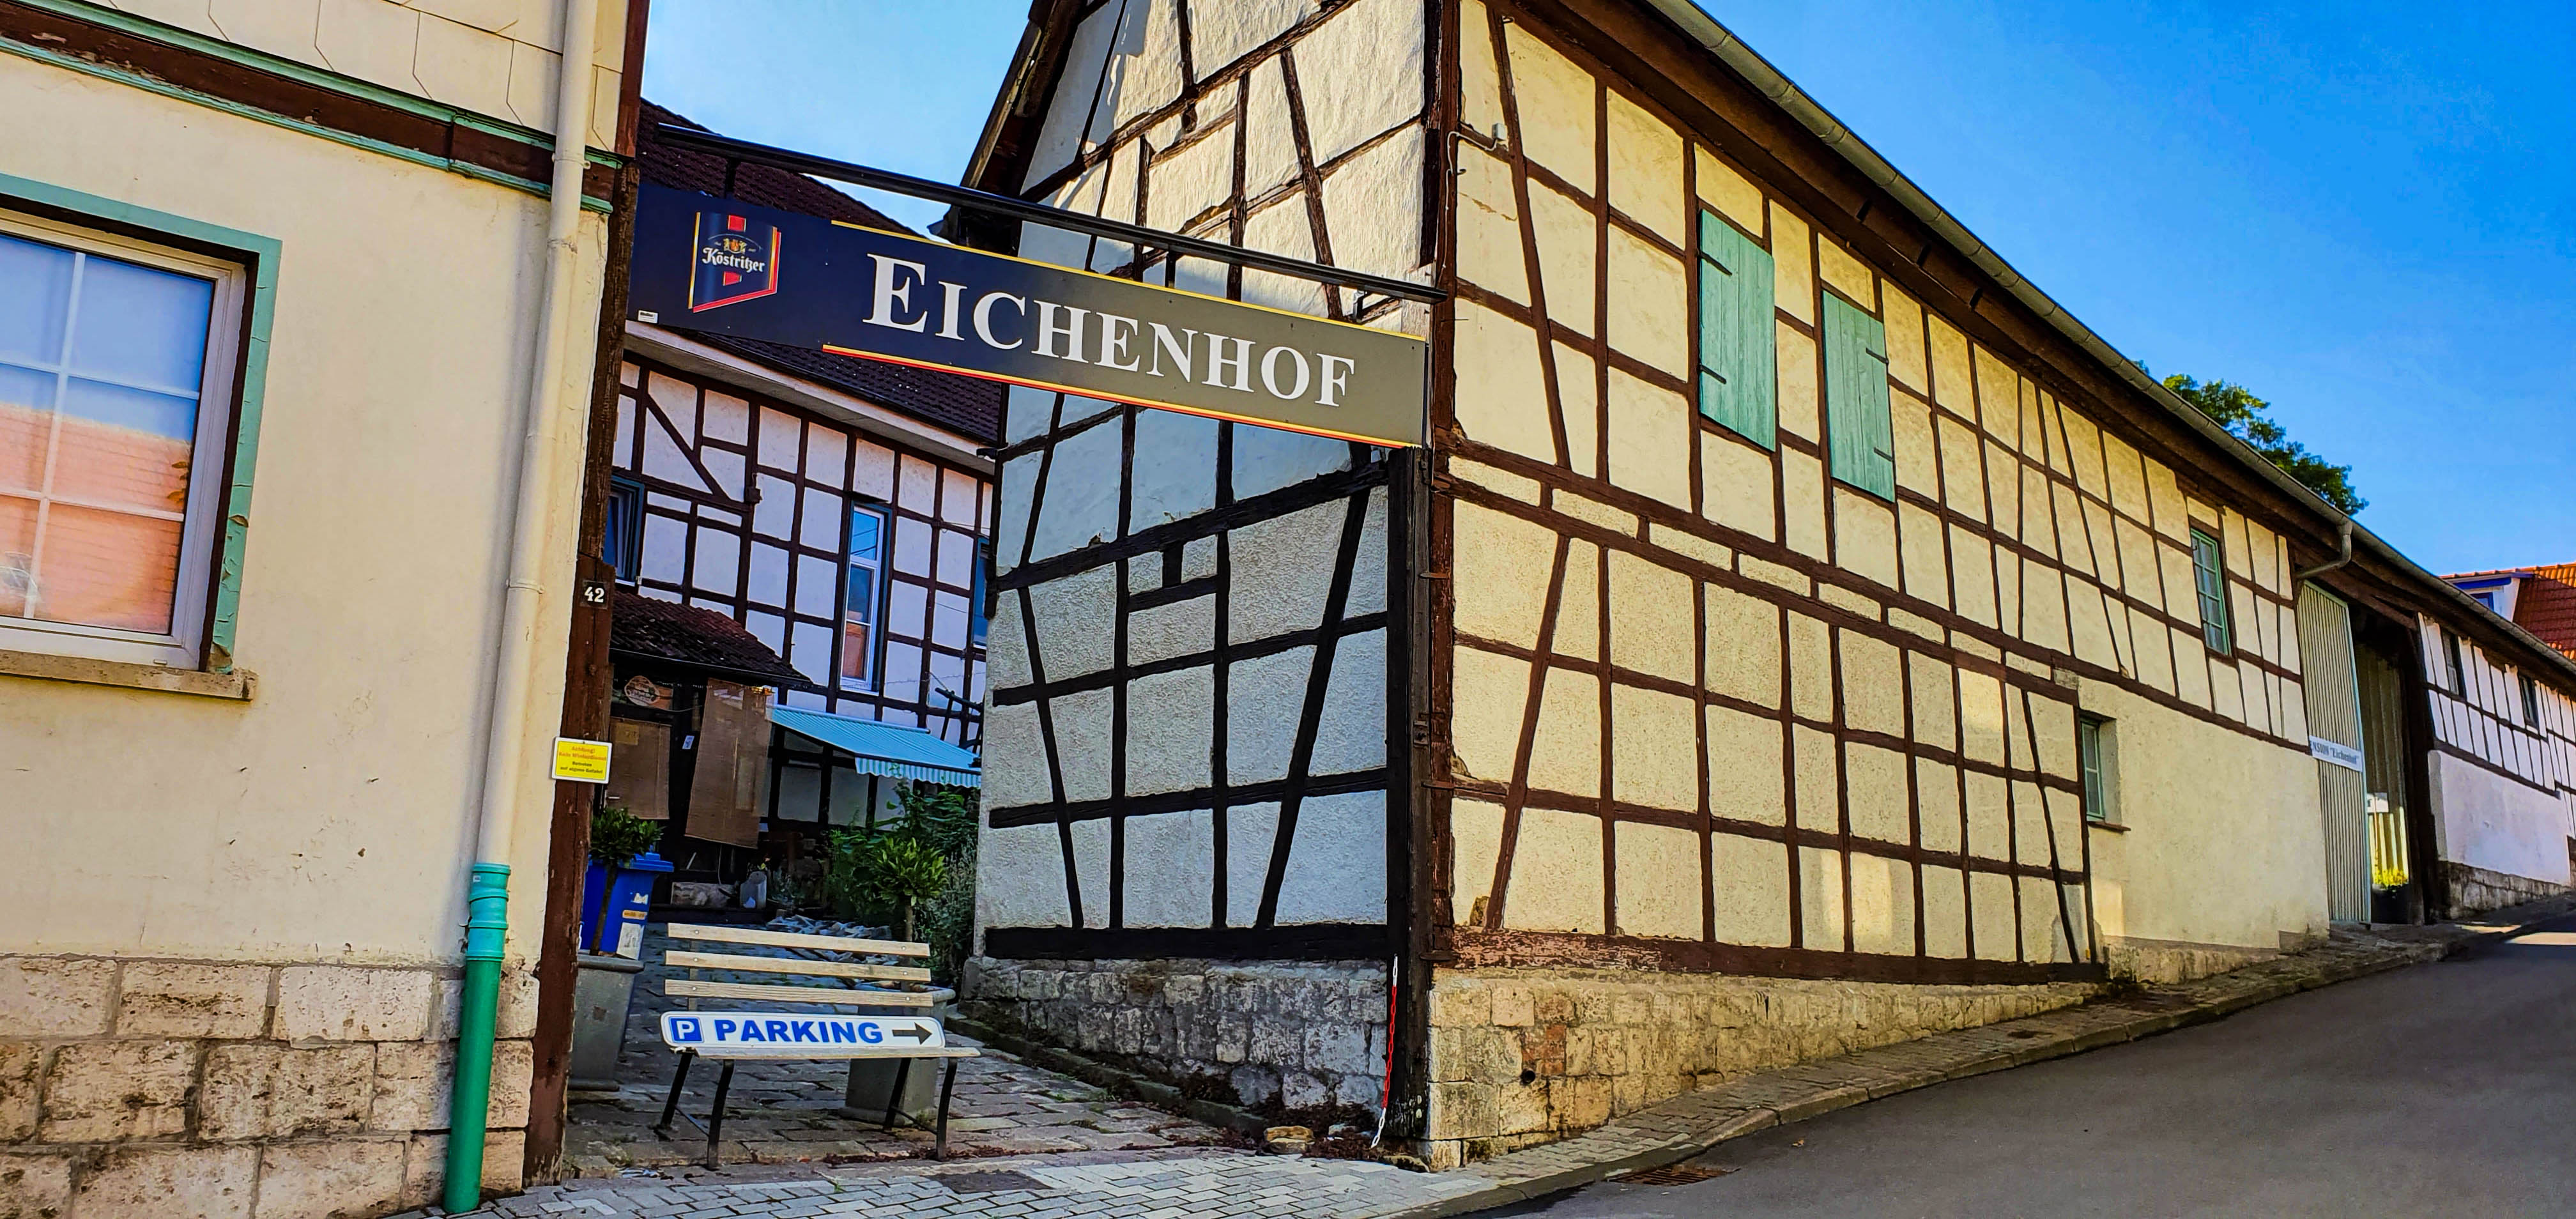 Pension Eichenhof in Eckardtsleden